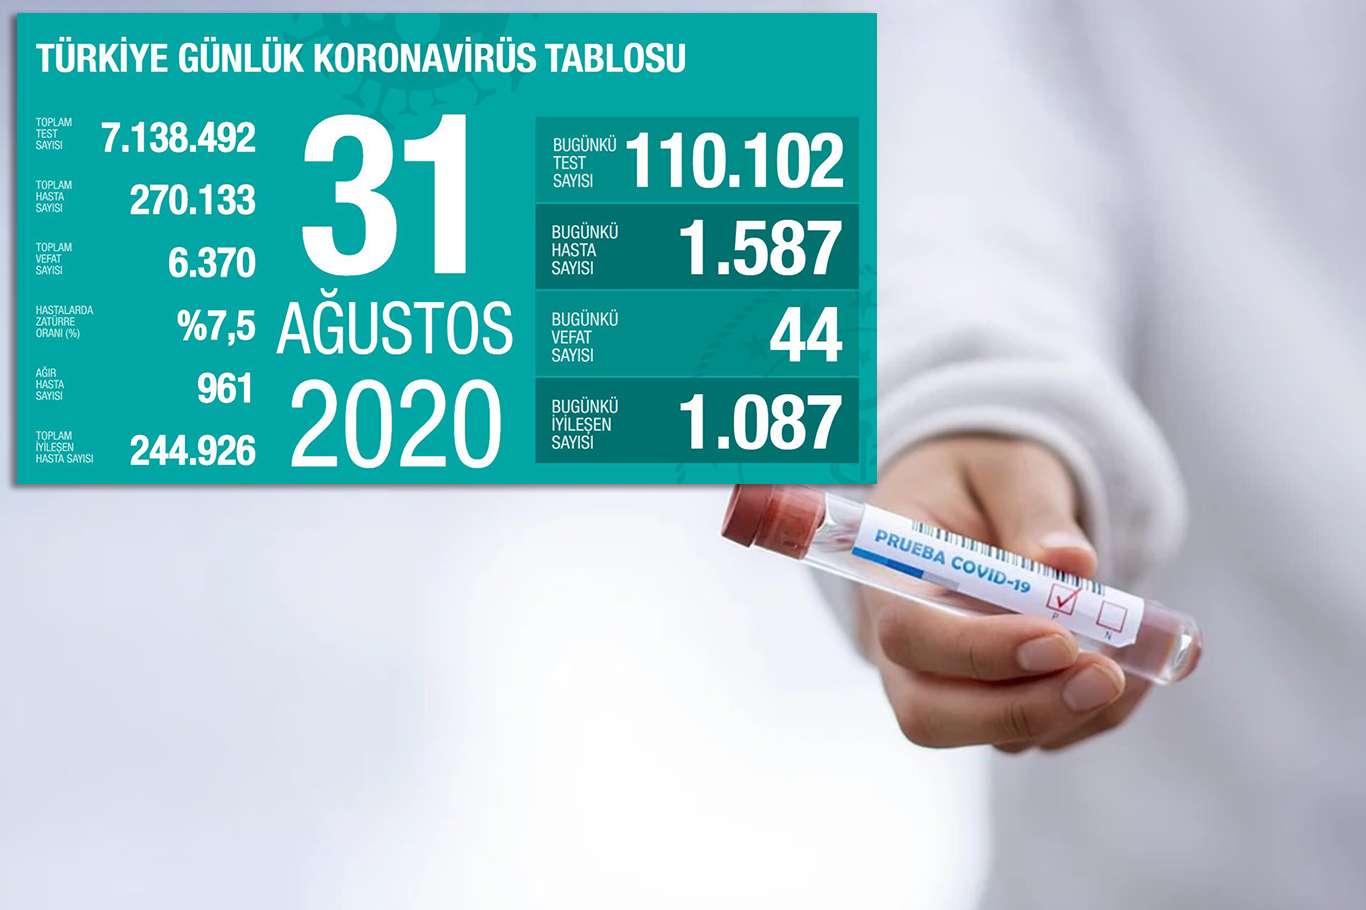 Coronavirus'ten bugün 44 kişi hayatını kaybetti